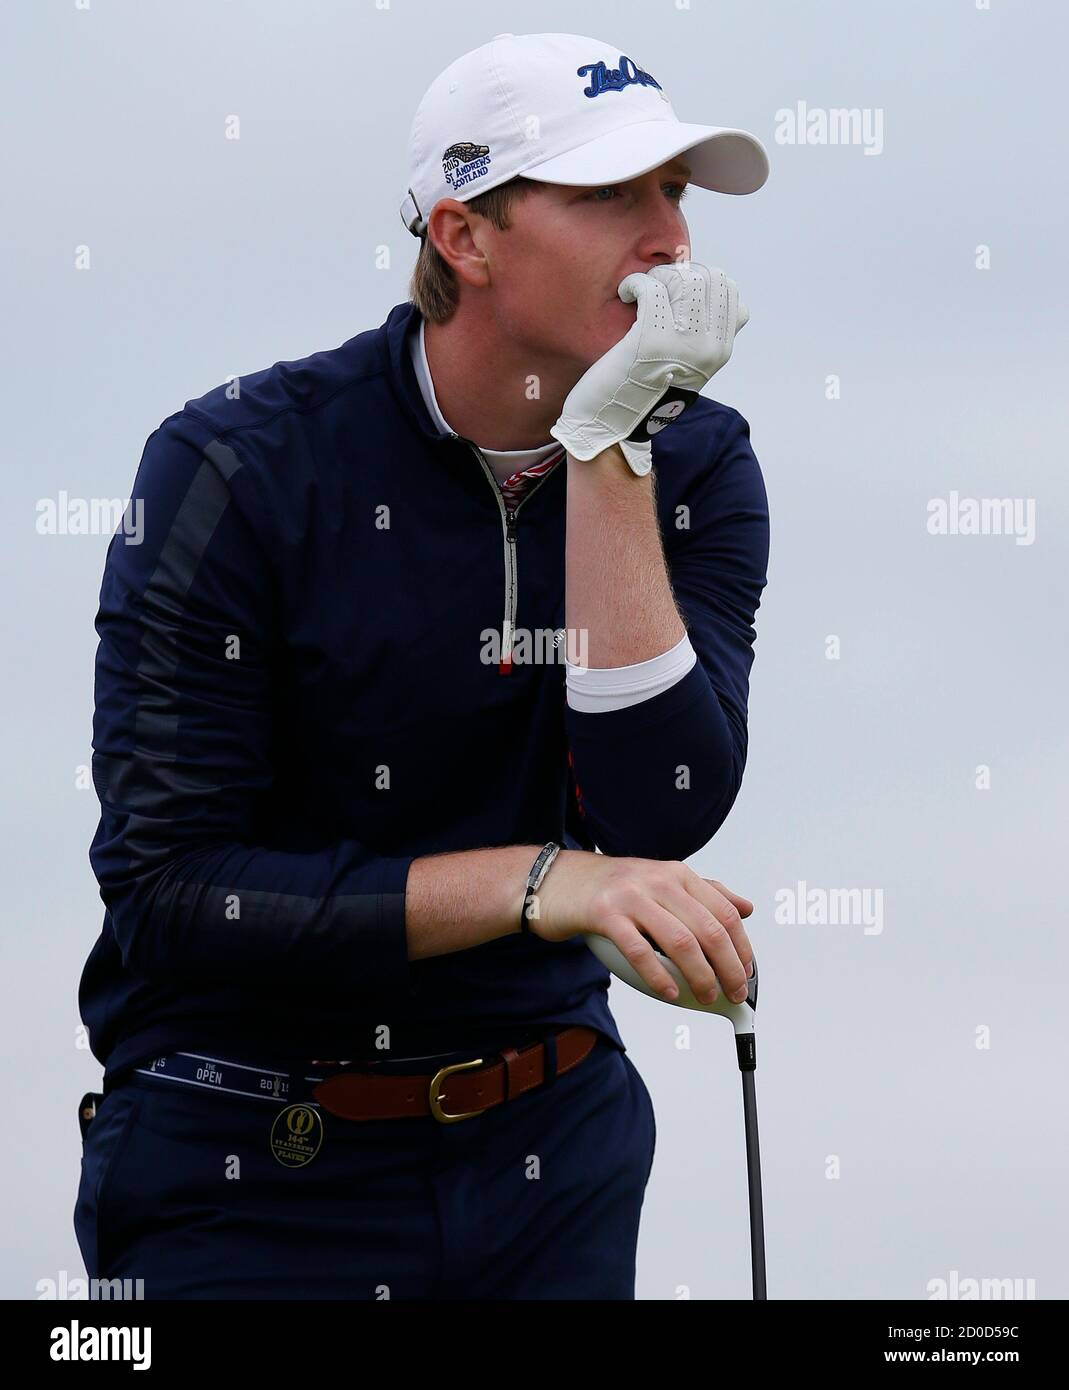 Jordan Niebrugge de los EE.UU. Observa su tiro en el hoyo 13 durante la primera ronda del campeonato de golf British Open en el Old Course en St. Andrews, Escocia, 16 de julio de 2015. REUTERS/Paul Childs Foto de stock